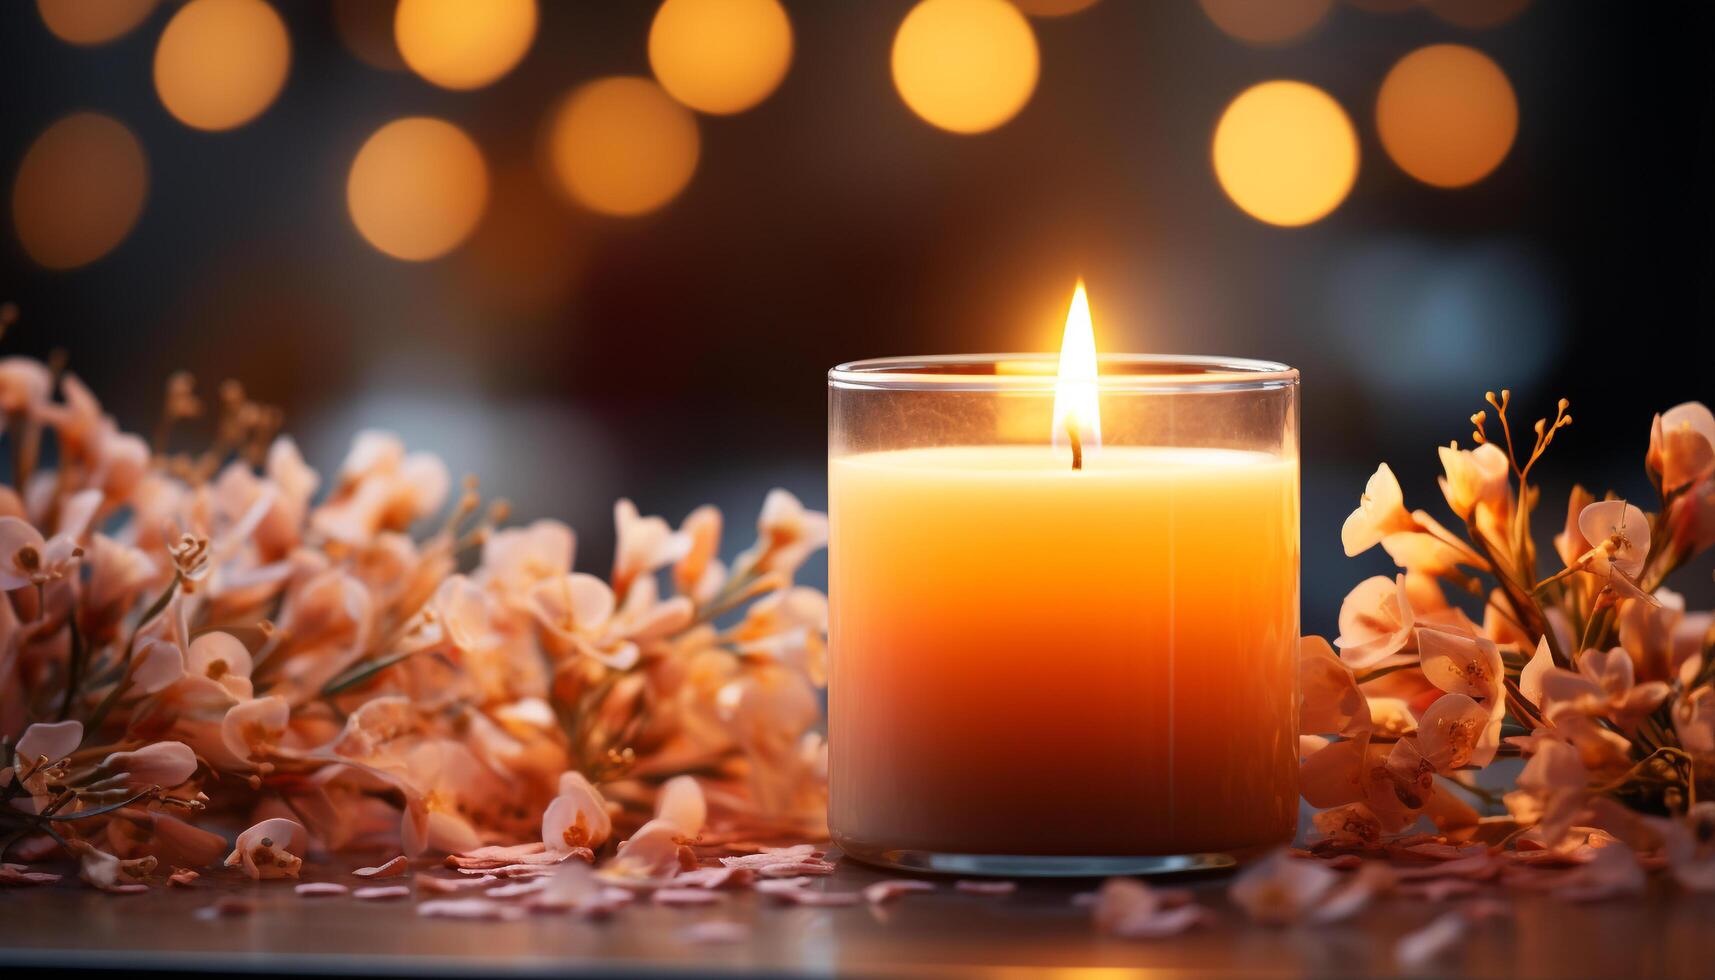 AI generated Glowing candle illuminates dark winter night, symbolizing spirituality and romance generated by AI photo